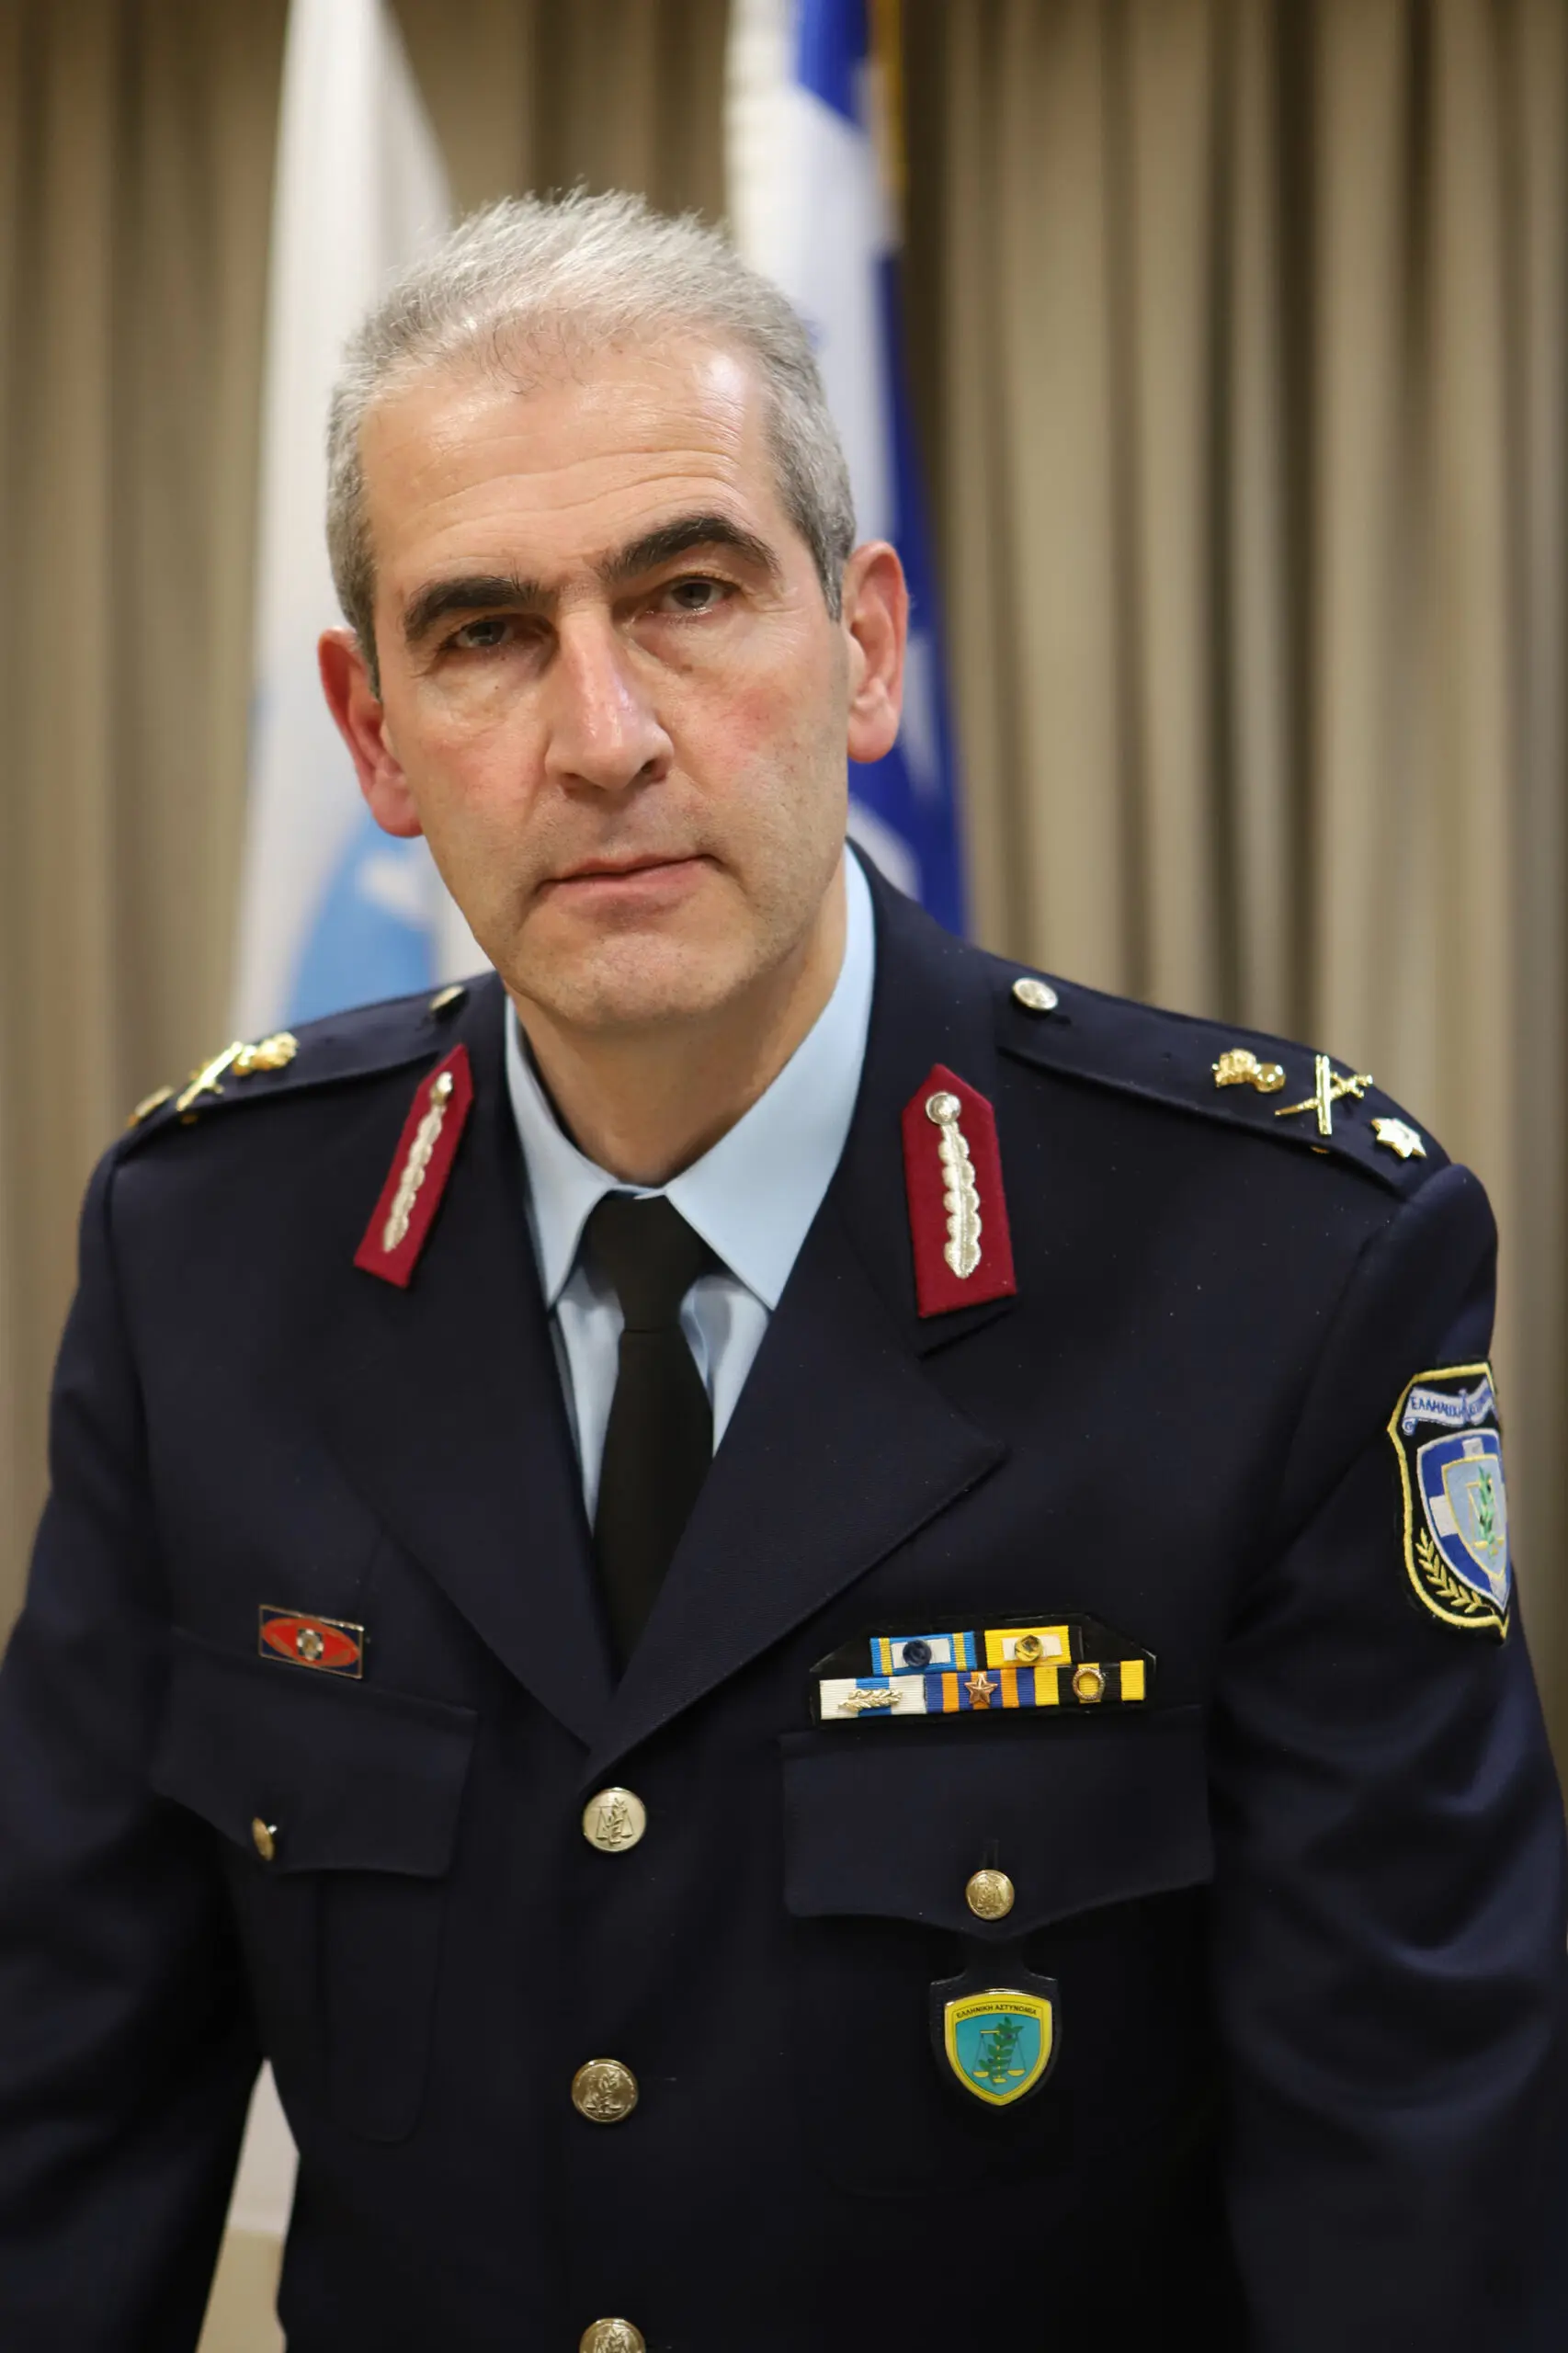 Aνέλαβε και εκτελεί καθήκοντα Γενικού Περιφερειακού Αστυνομικού Διευθυντή Δυτικής Μακεδονίας, ο Ταξίαρχος Κωνσταντίνος ΣΠΑΝΟΥΔΗΣ